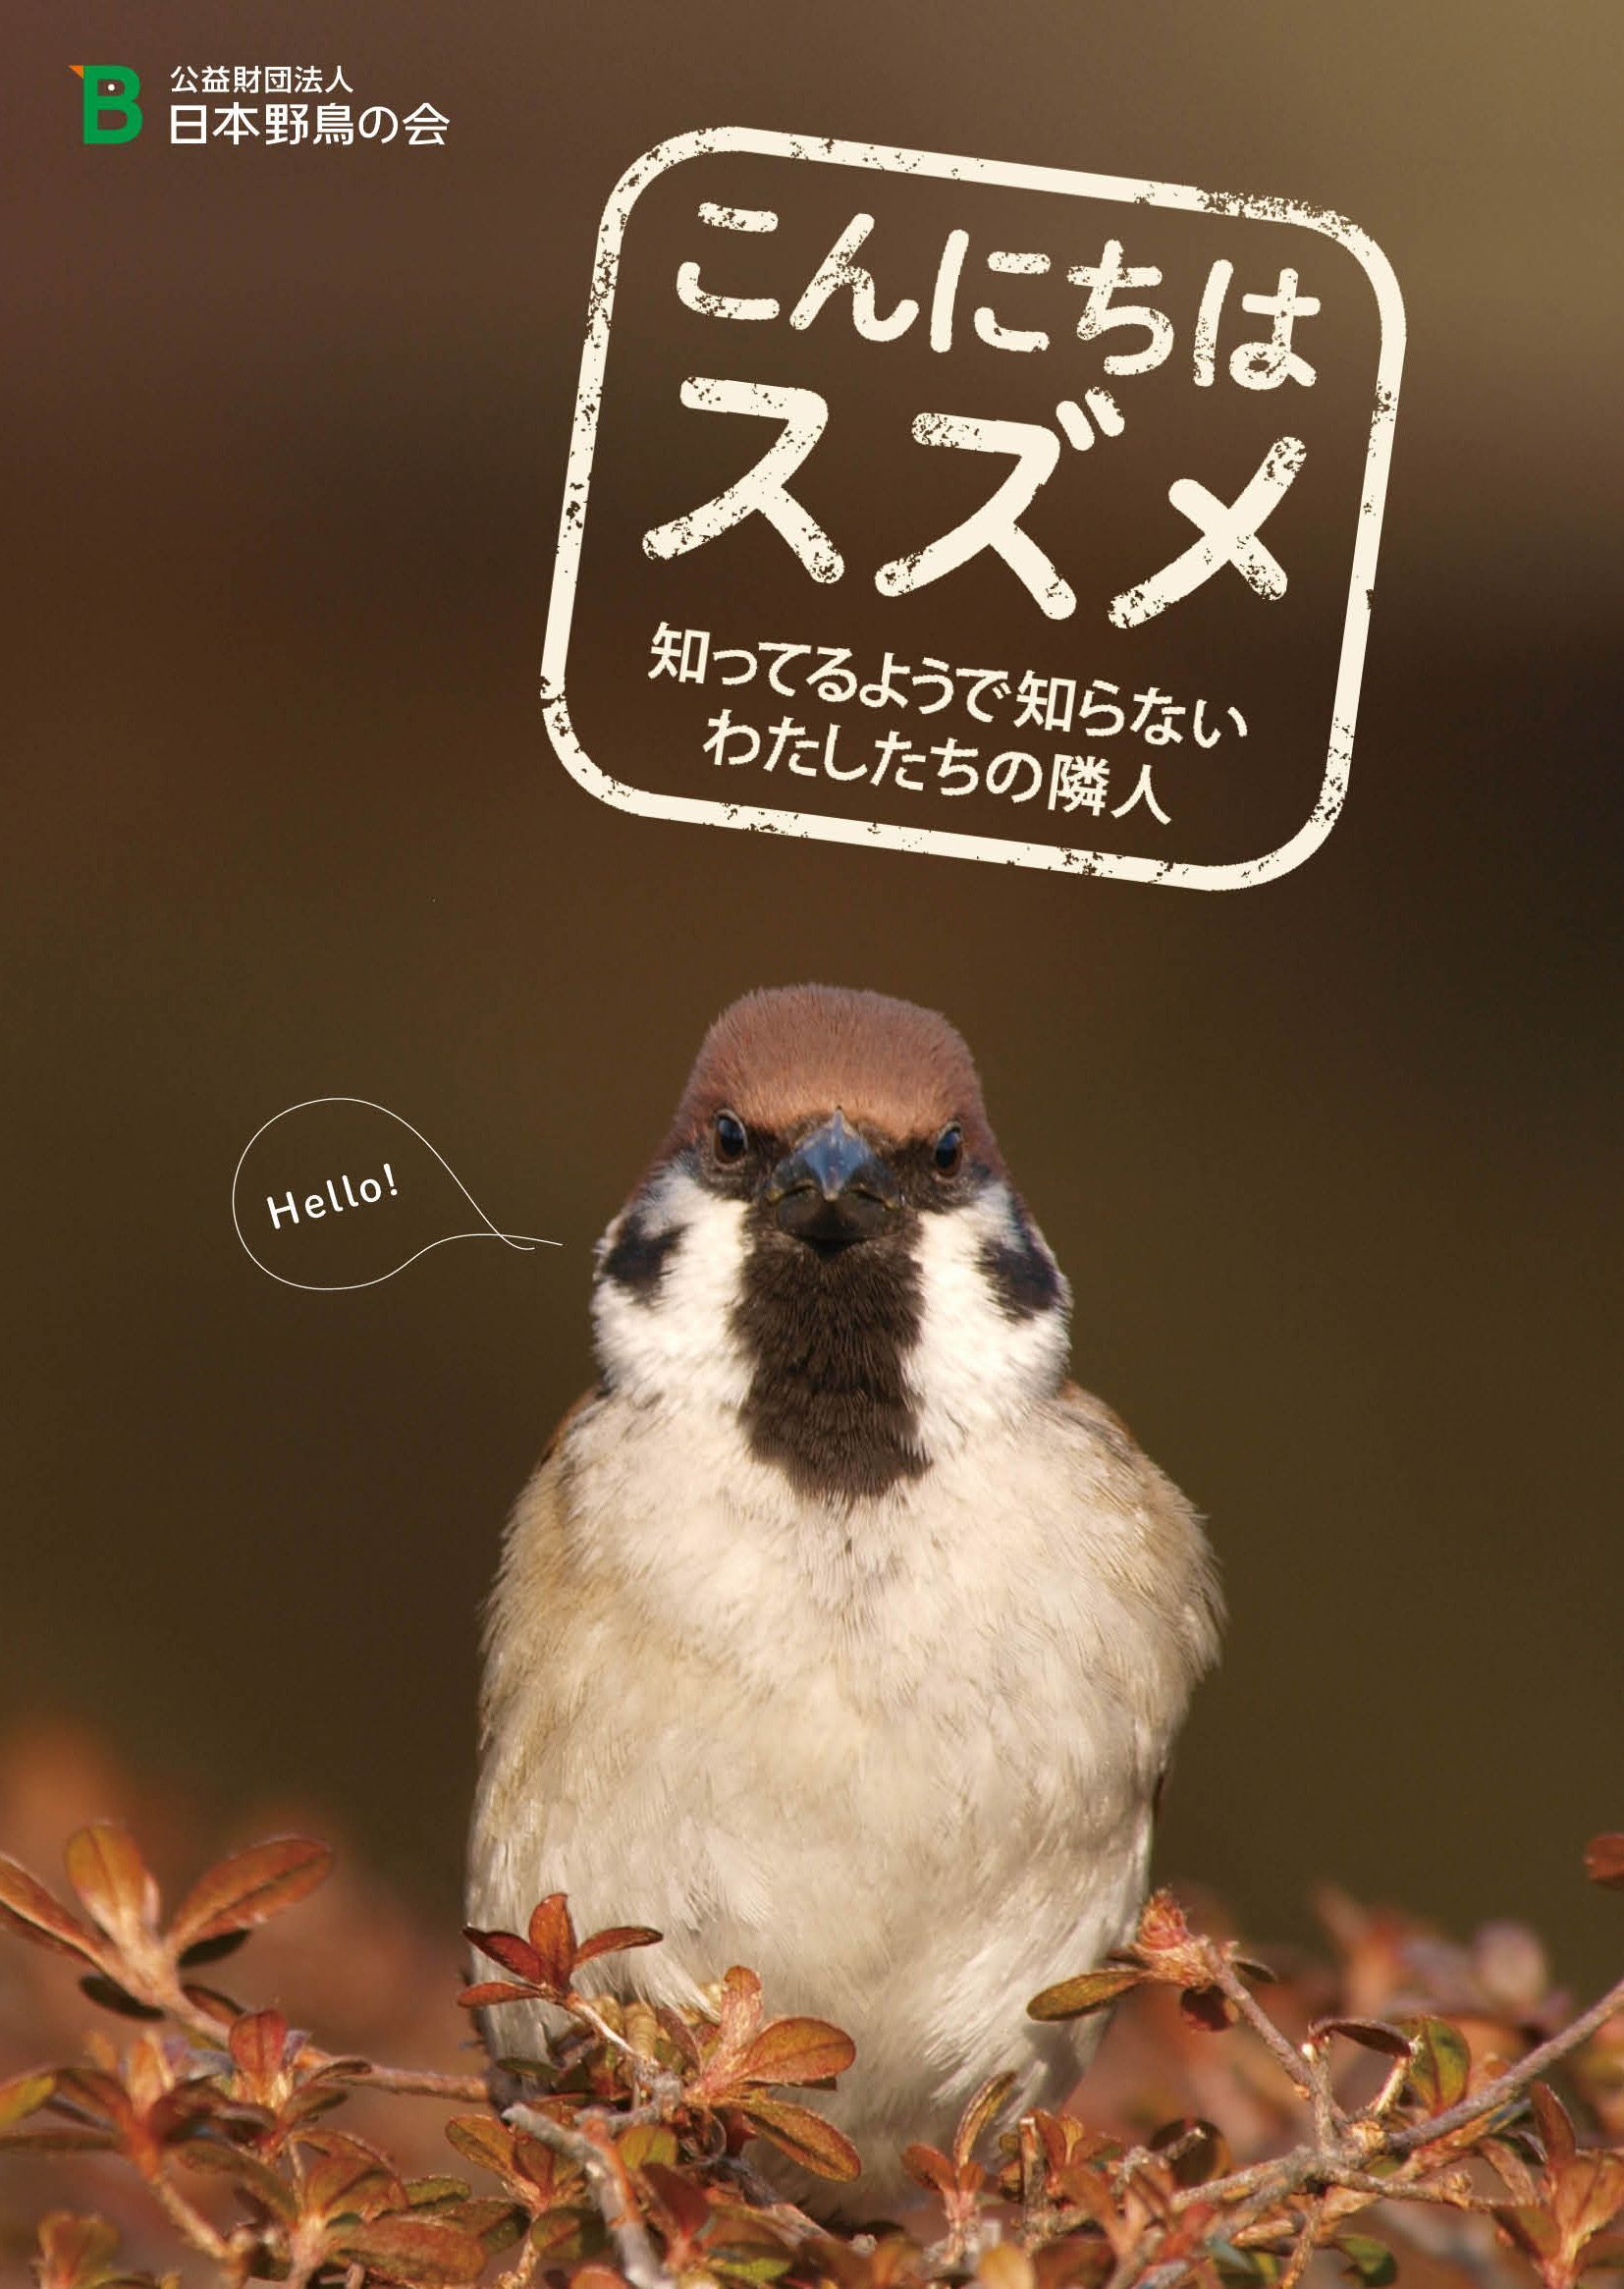 日本野鳥の会 知らなかったスズメの暮らしがわかる こんにちはスズメ 4月日より無料頒布 公益財団法人 日本野鳥の会のプレスリリース